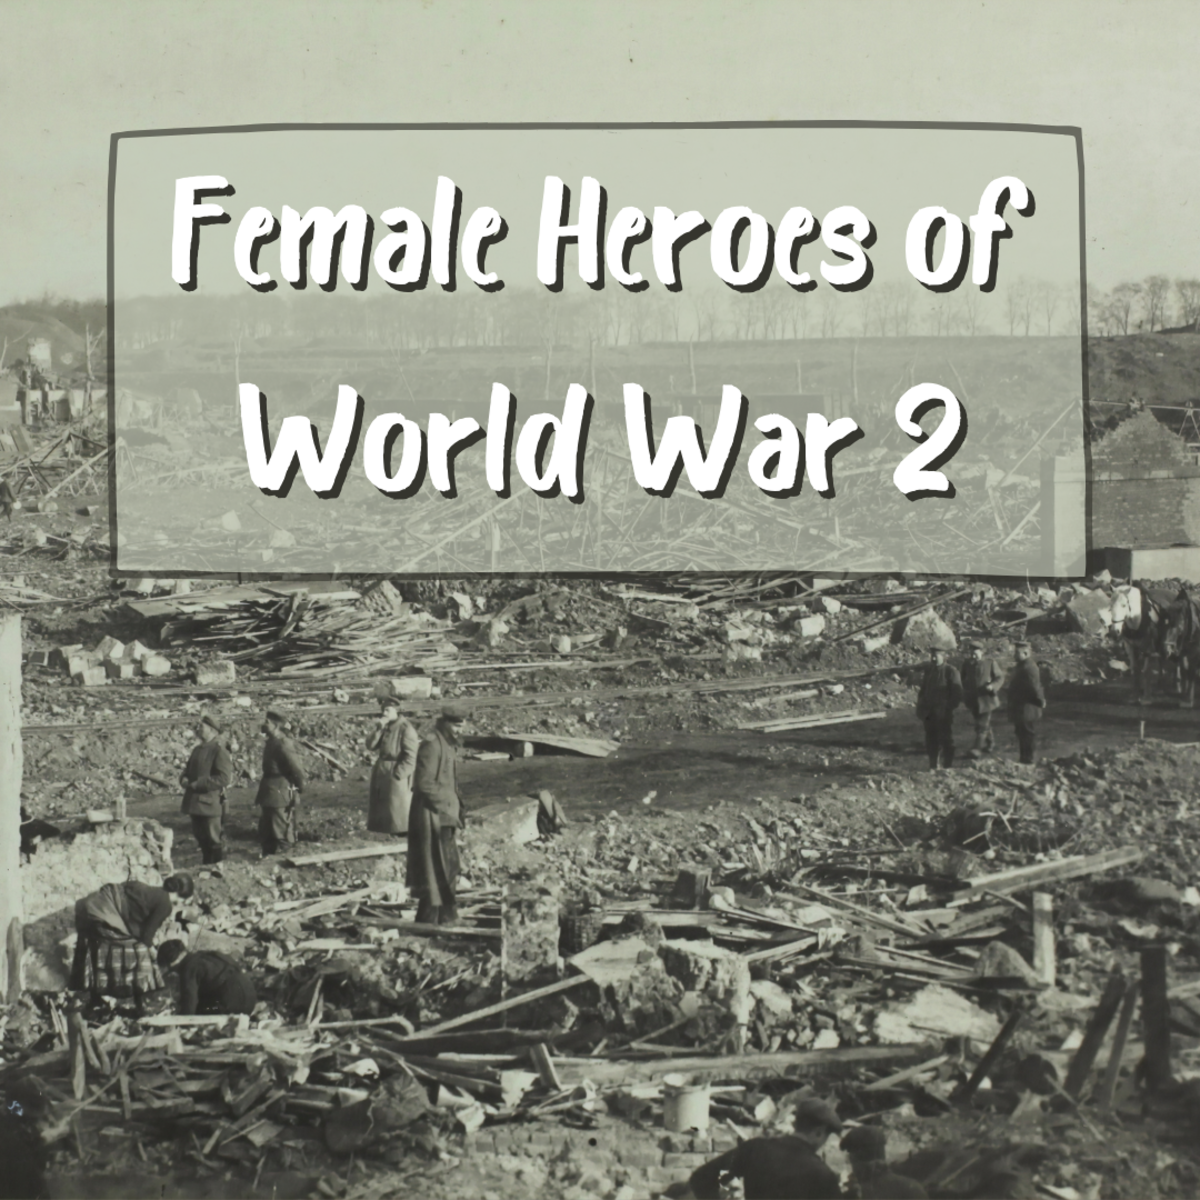 Heroic Women of World War 2